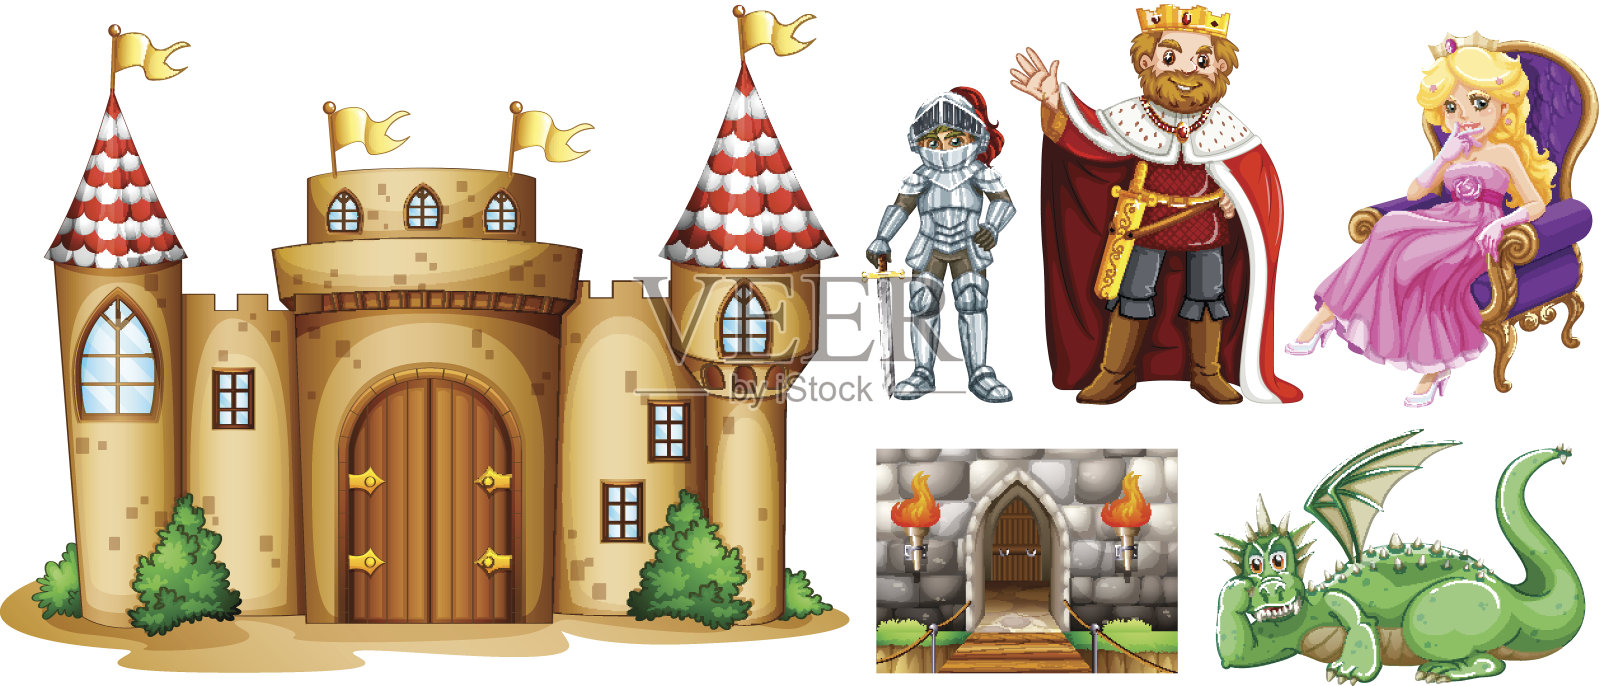 童话人物和宫殿建筑插画图片素材